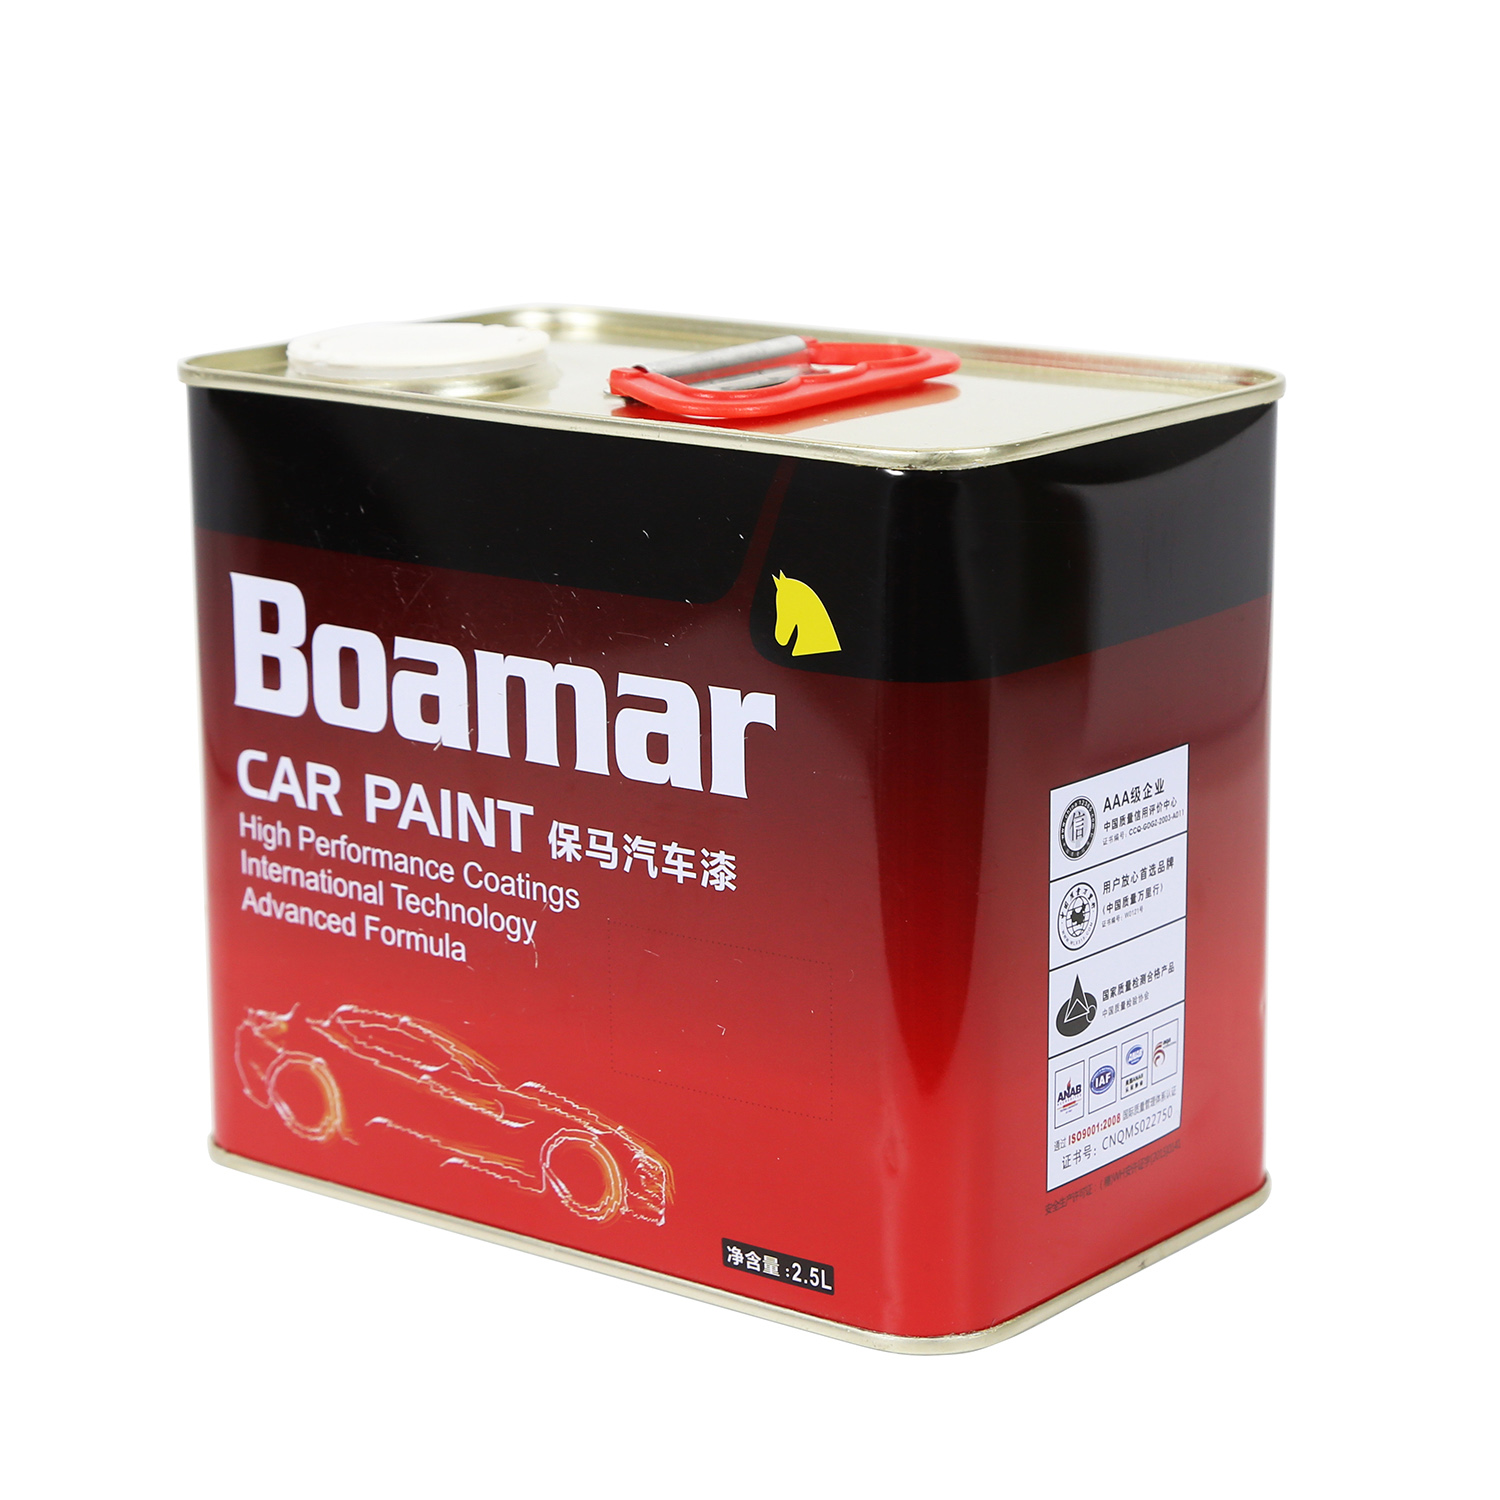 Boamar H180 Hardener Car Paint